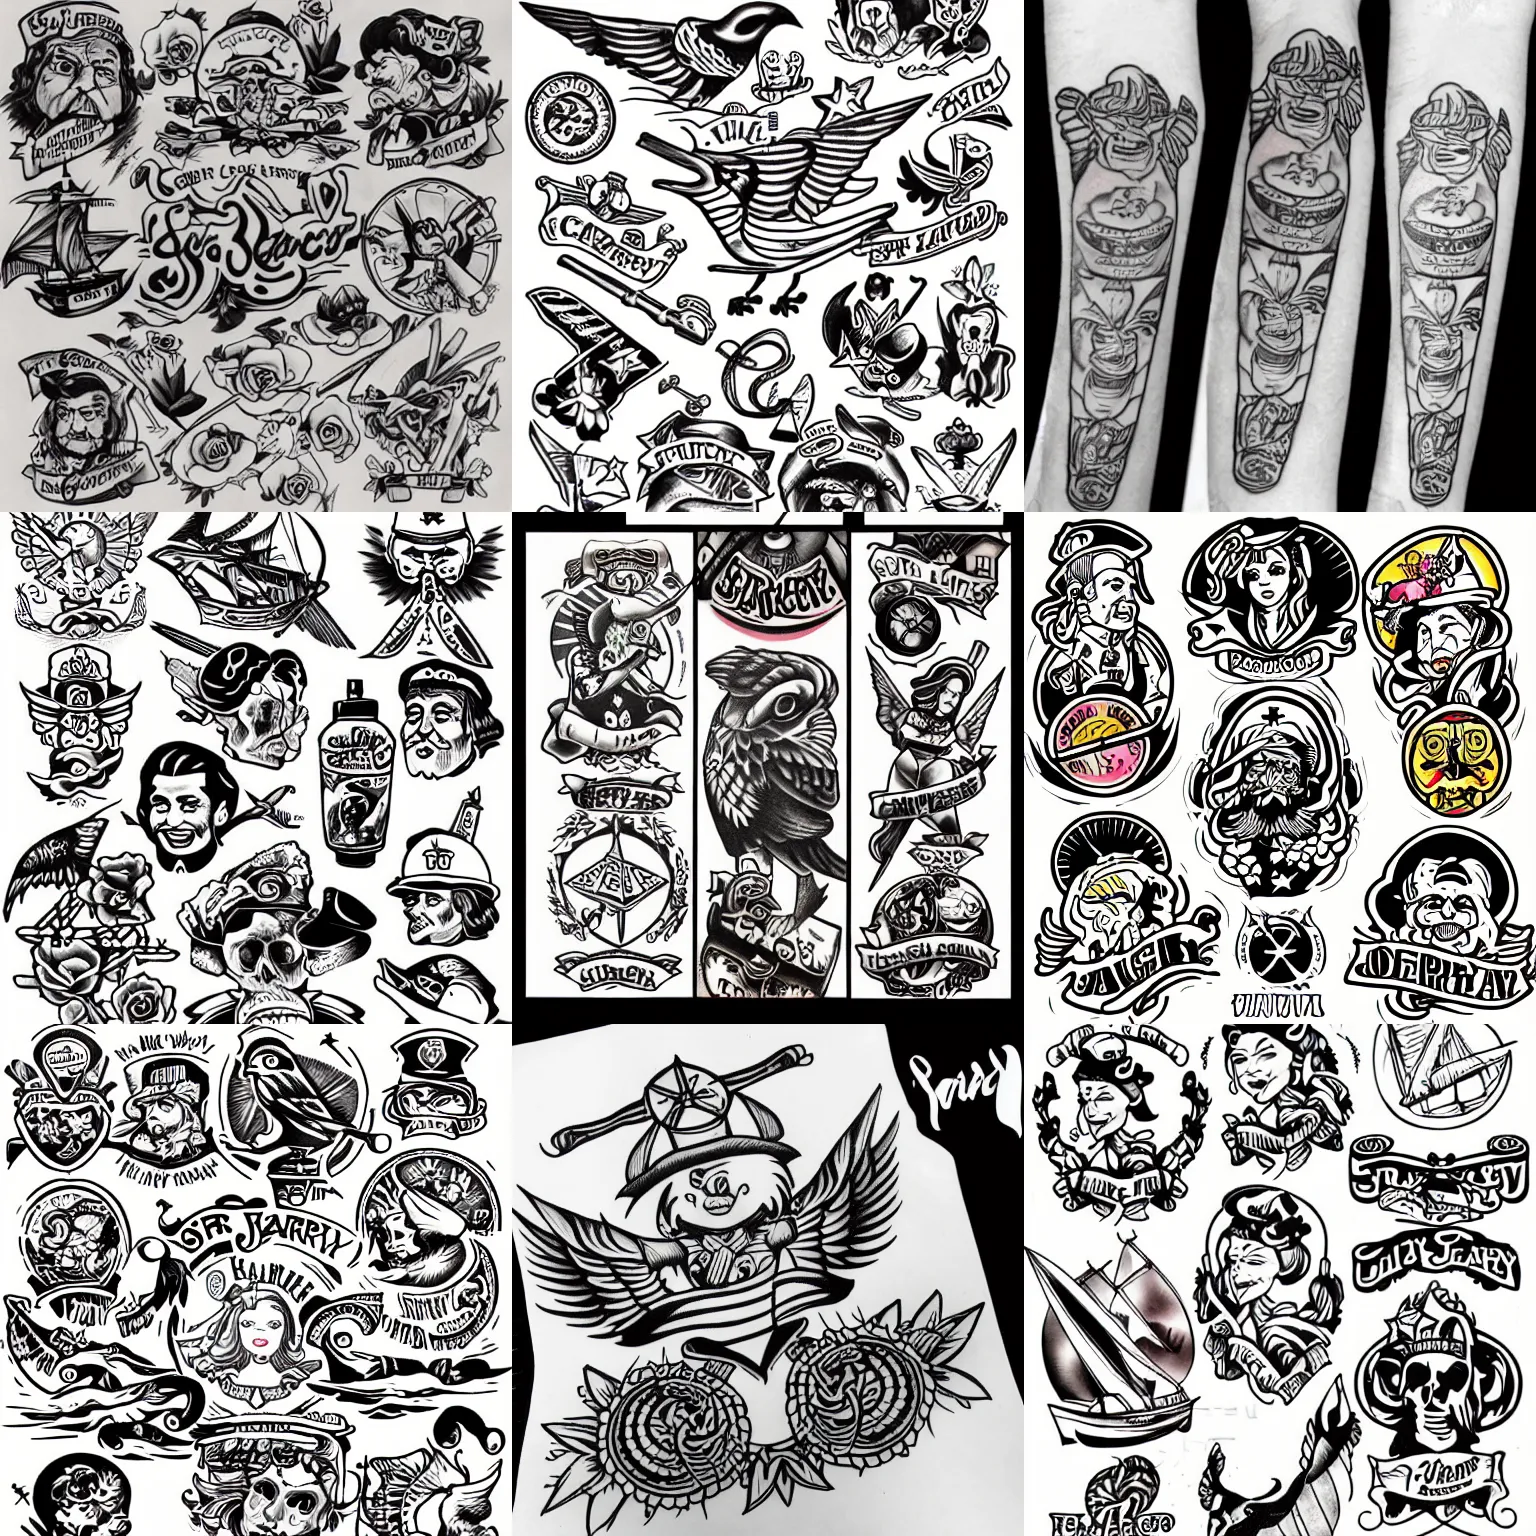 Robot Check | Sailor jerry tattoo flash, Sailor jerry tattoos, Sailor jerry